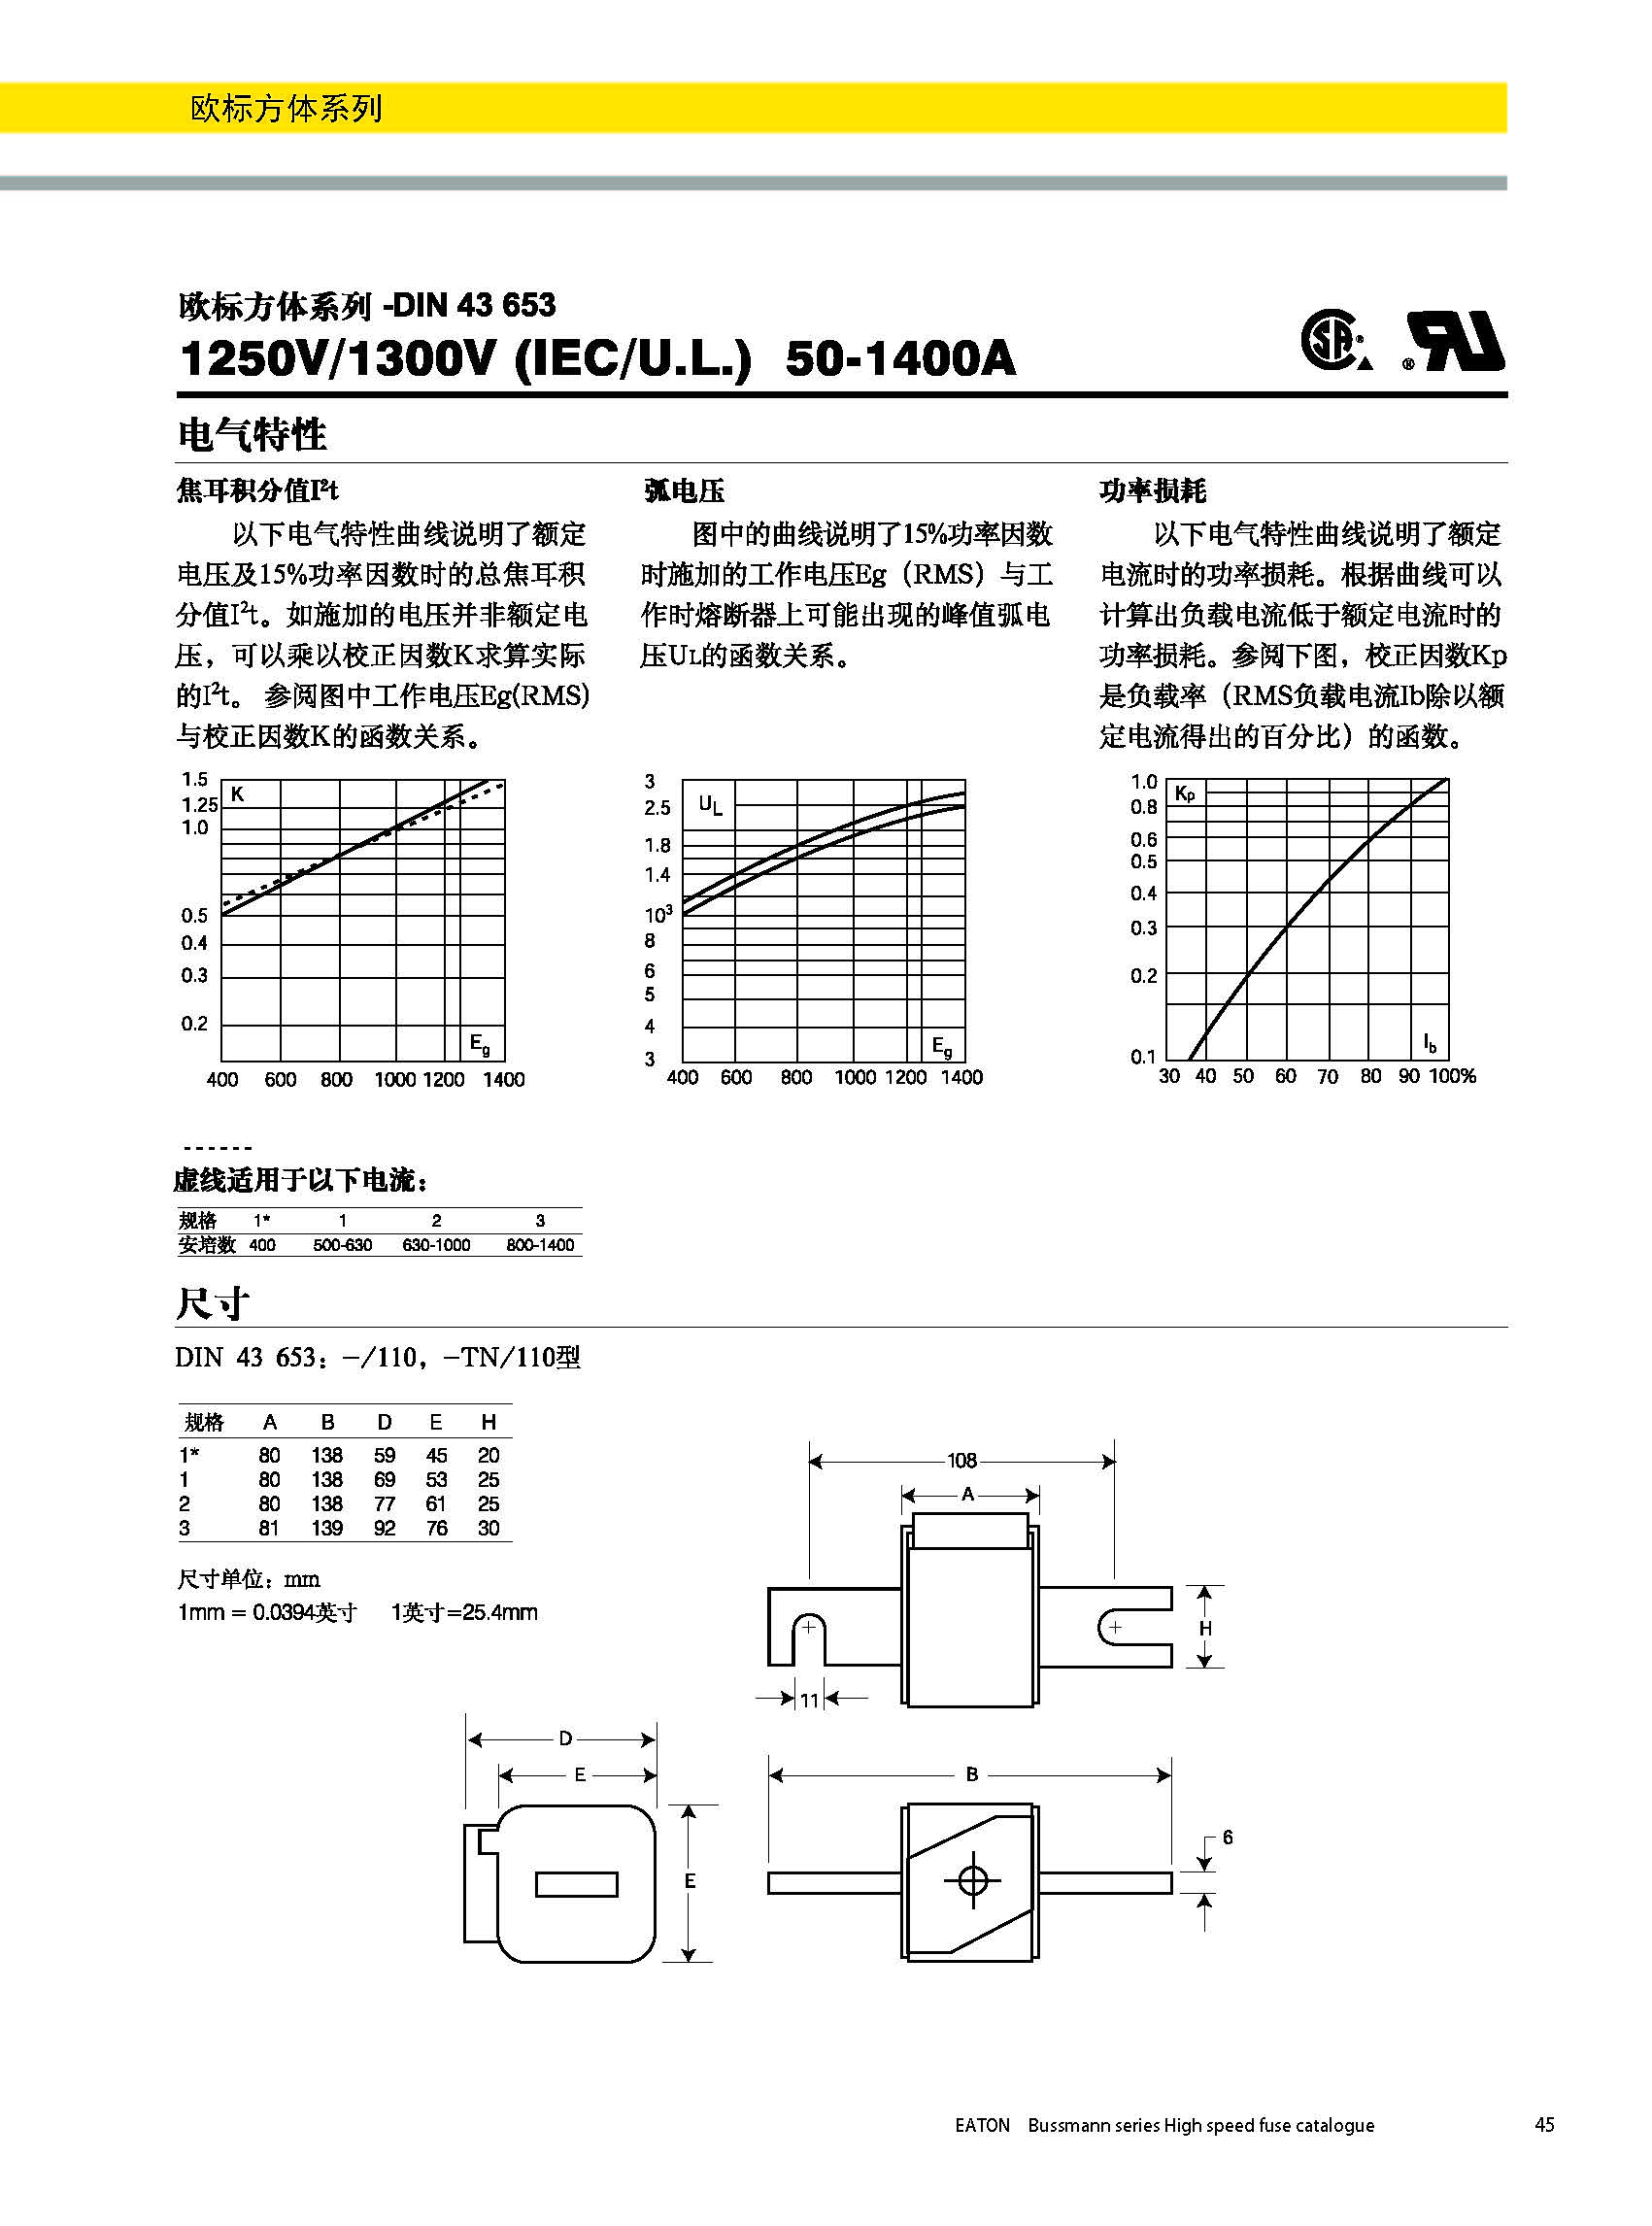 欧标方体DIN43653 电气特性